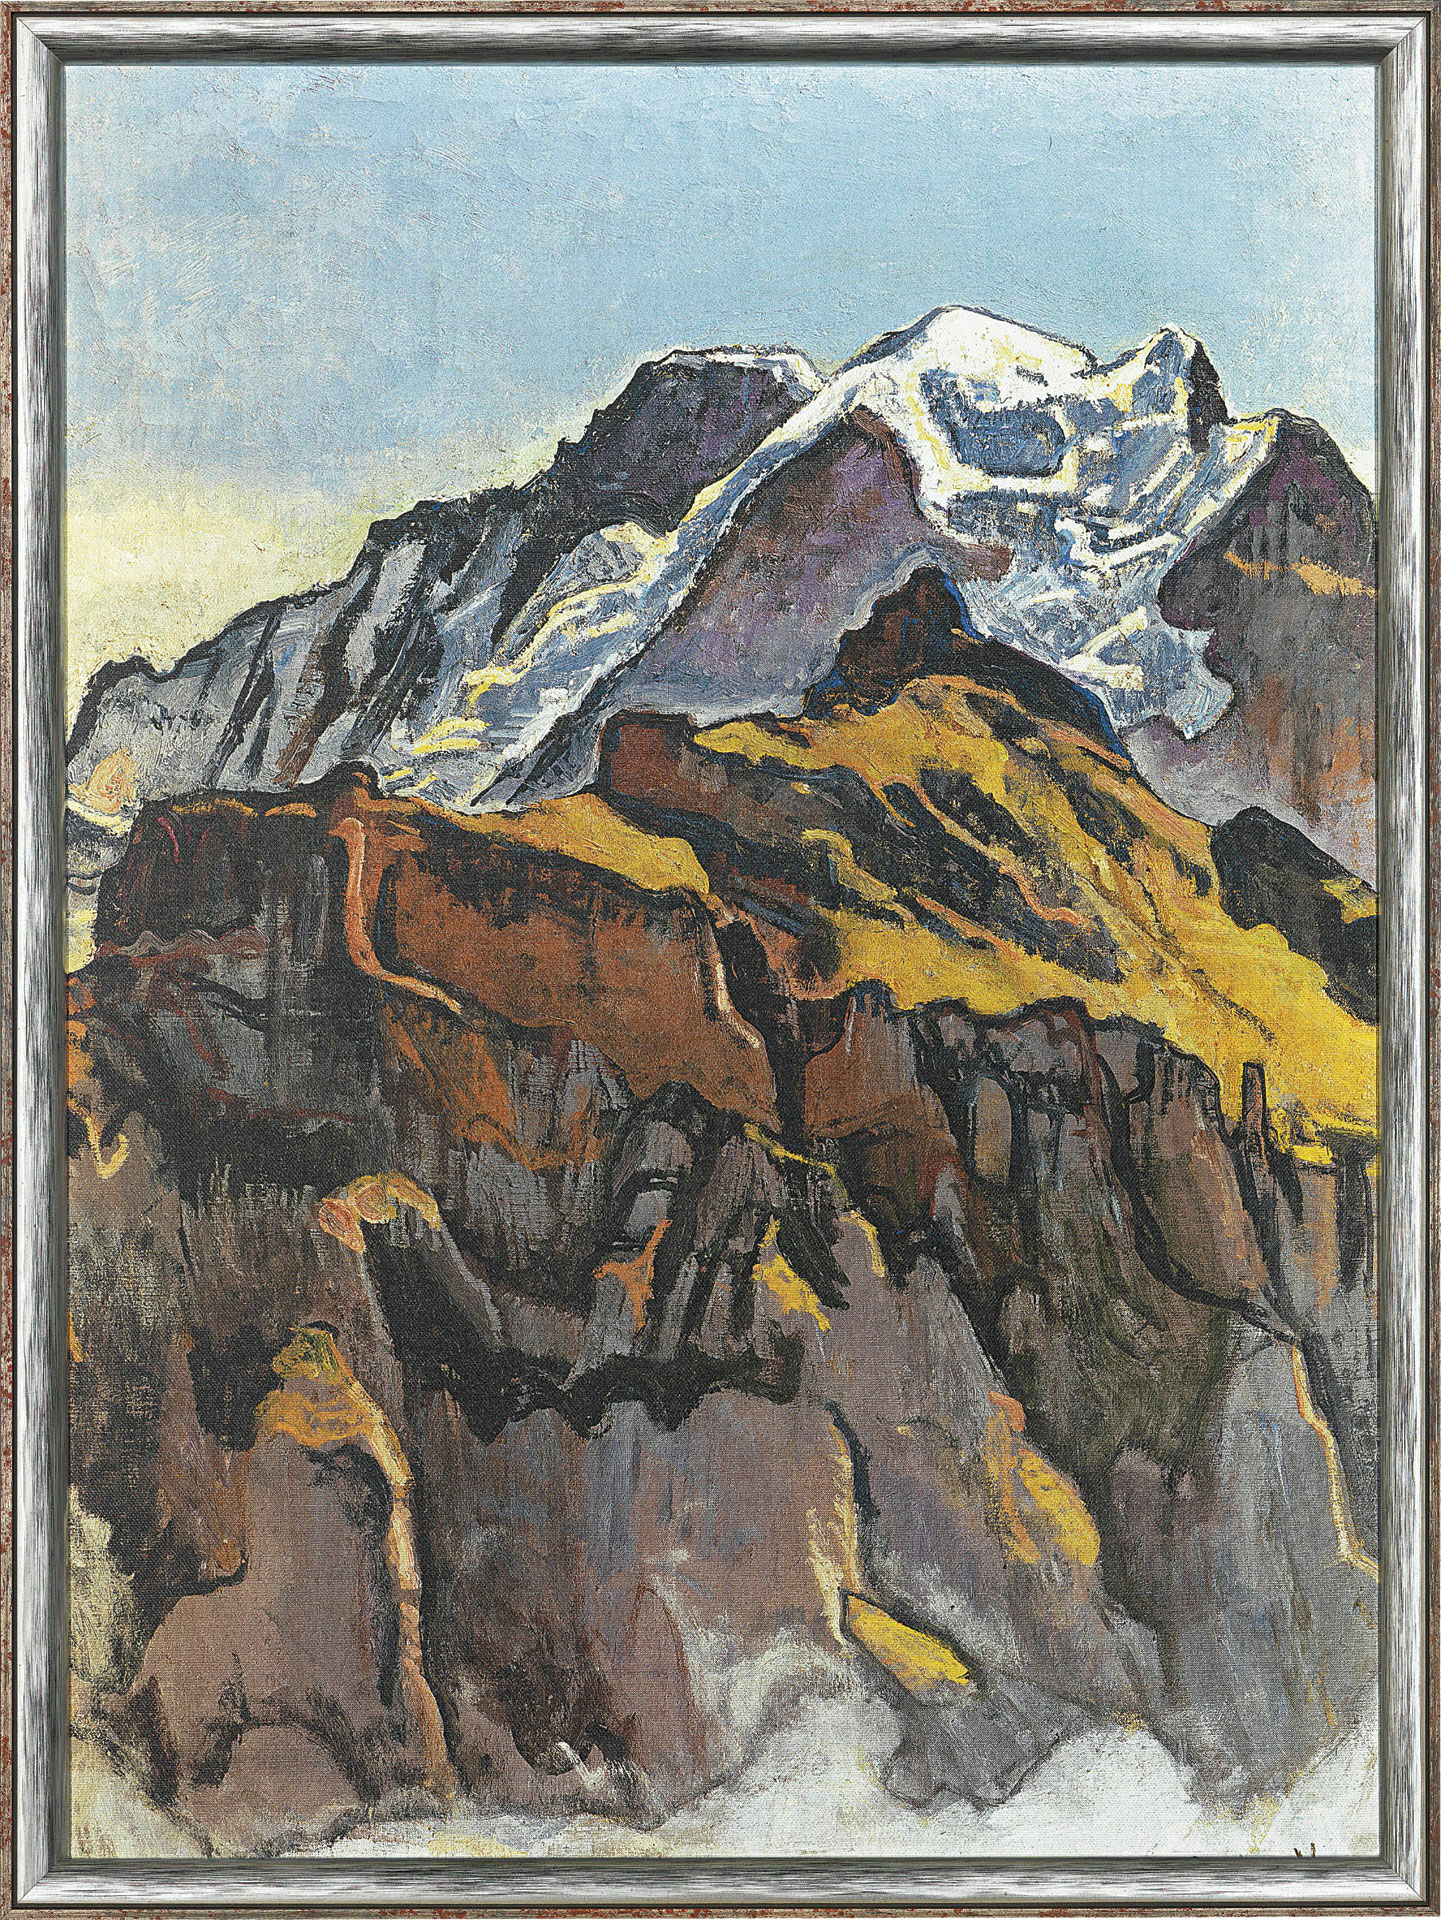 Billede "Jungfrau, set fra Mürren" (1911), indrammet von Ferdinand Hodler